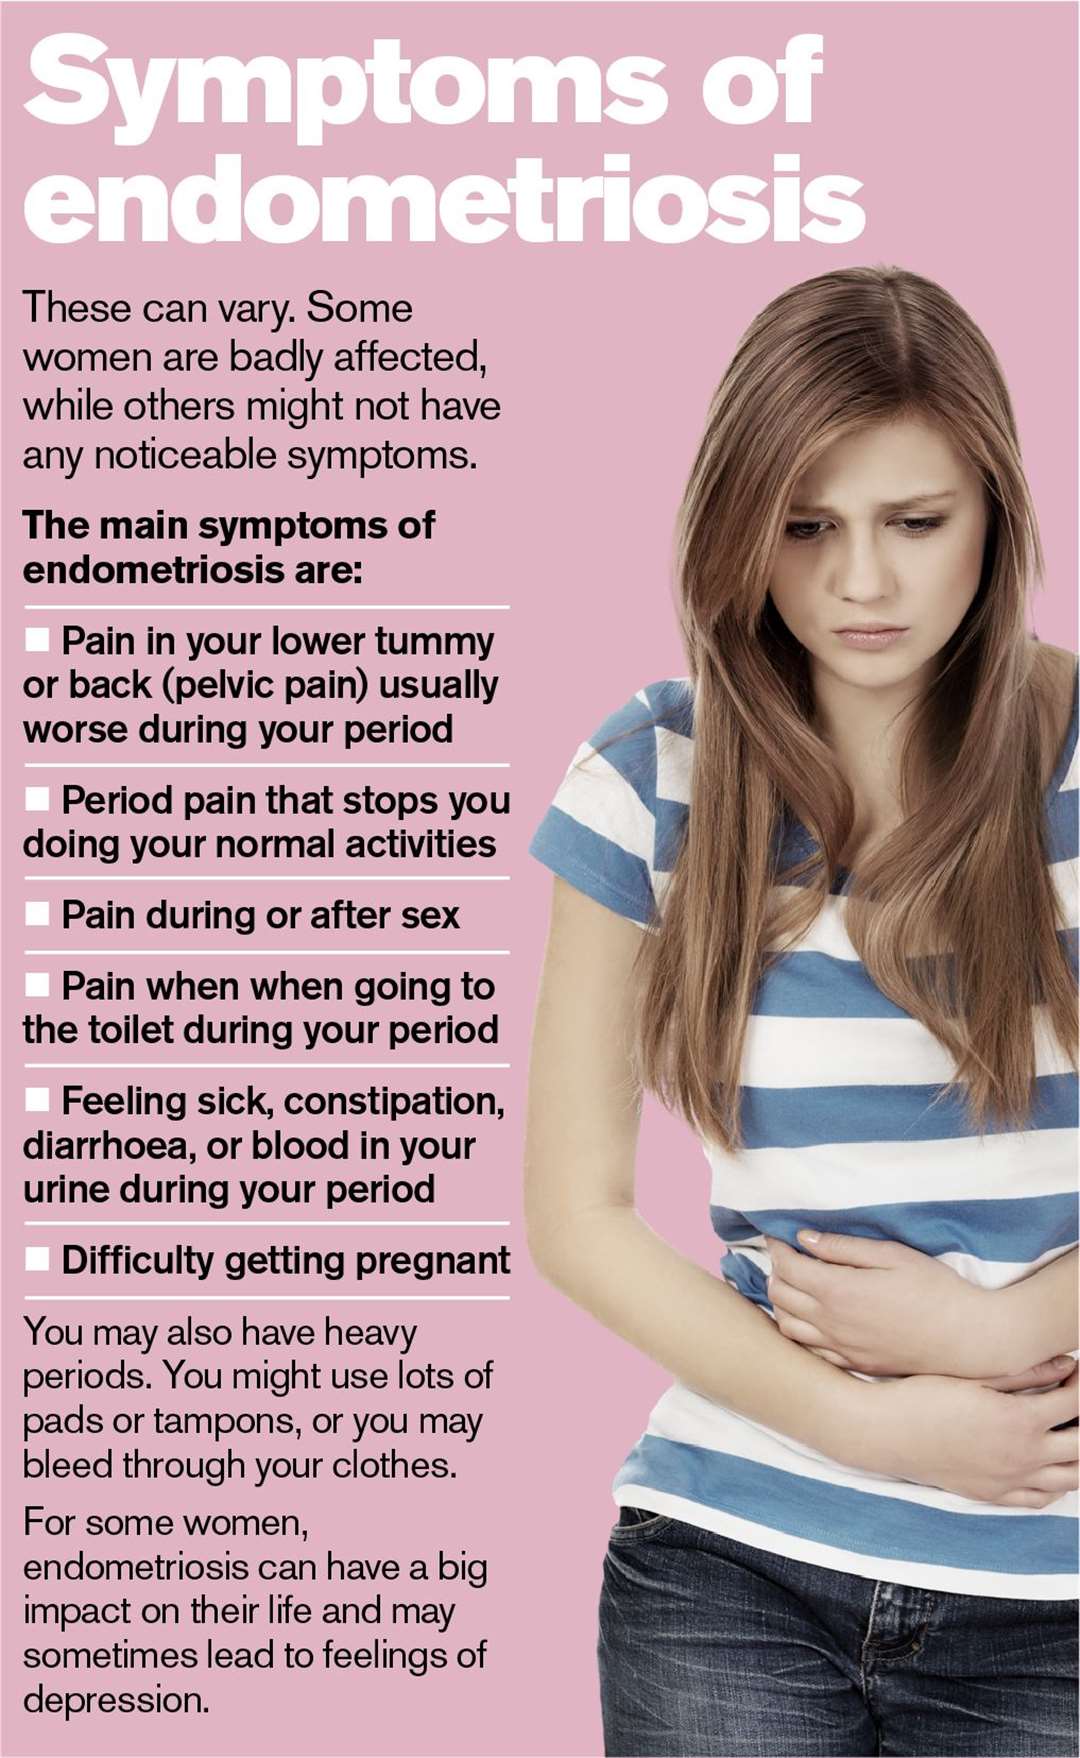 Symptoms of Endometriosis. Source: NHS (19562819)